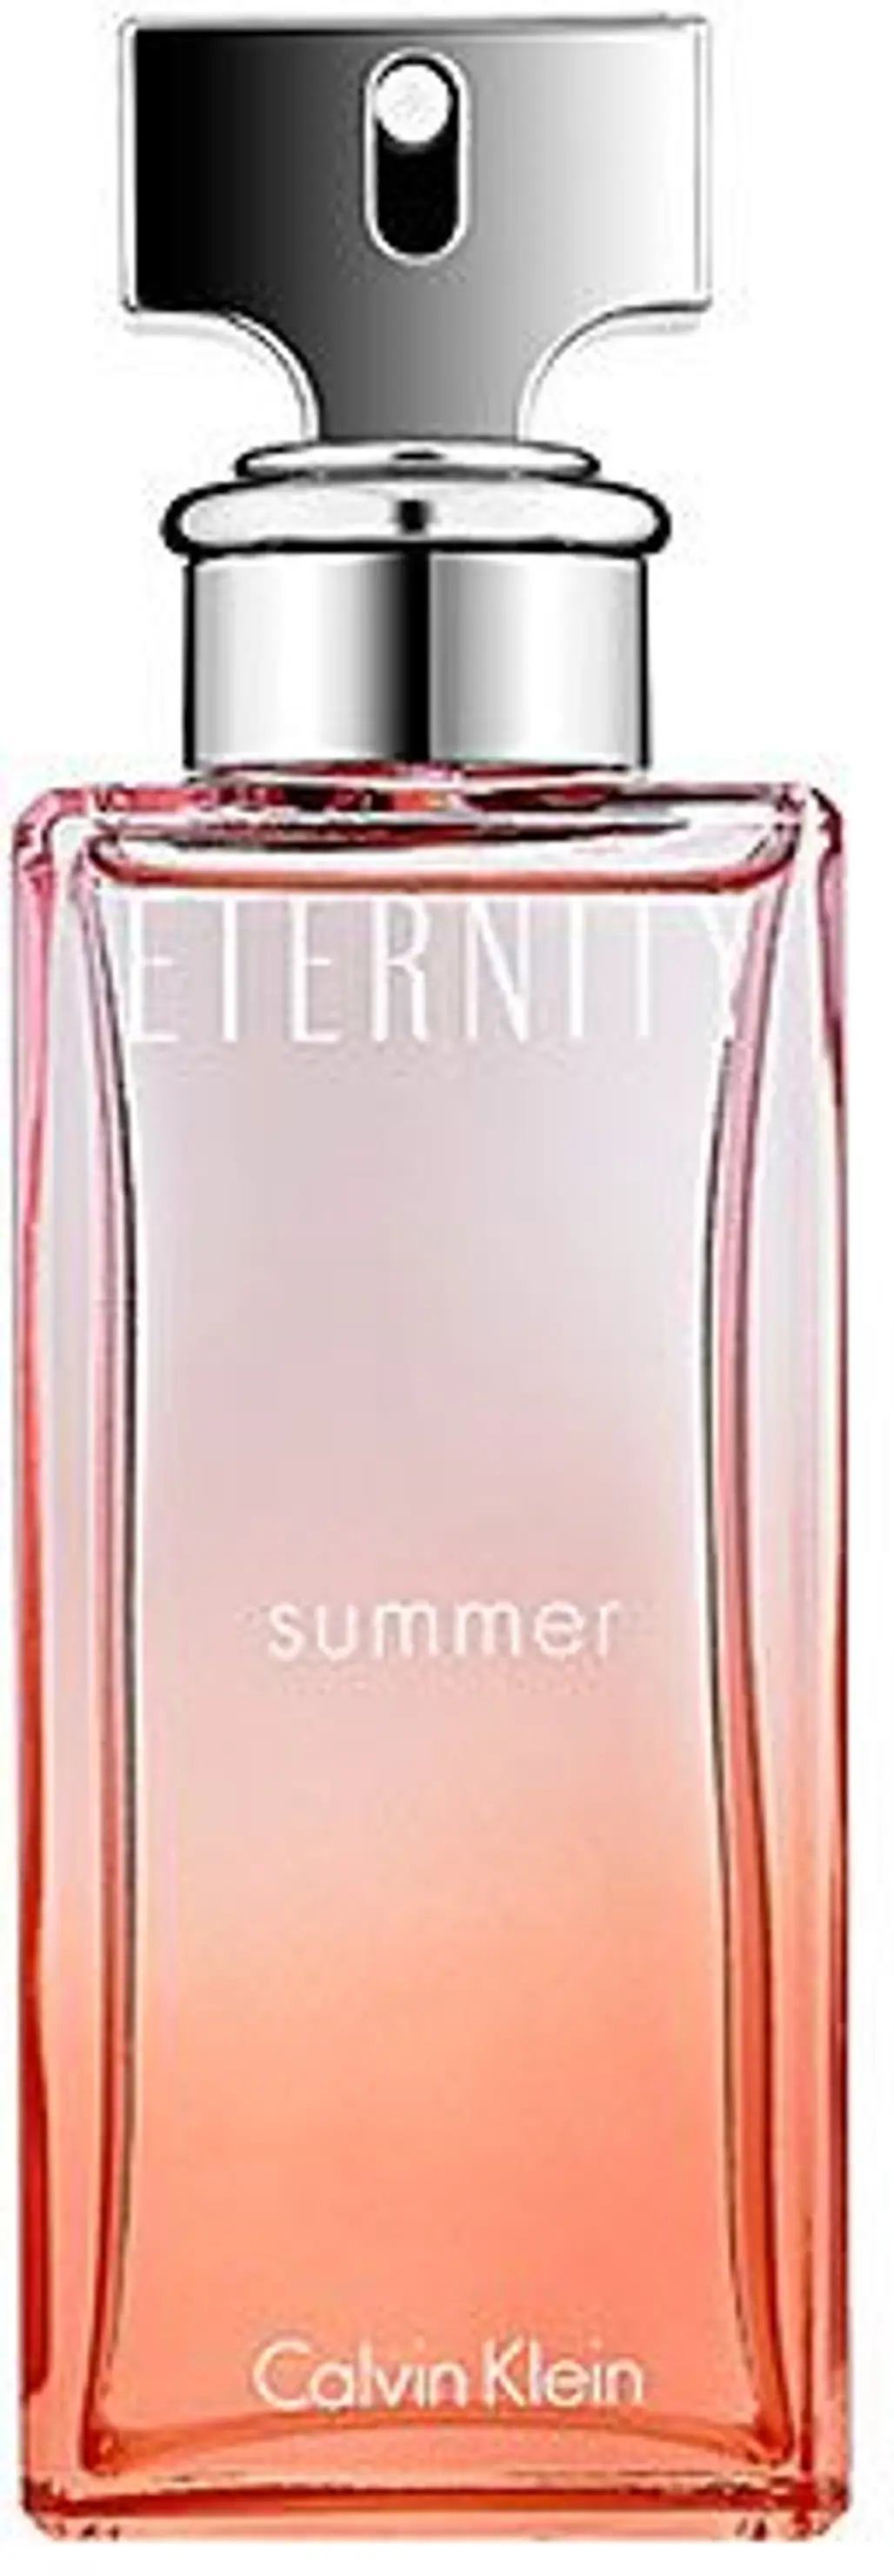 ETERNITY Summer by Calvin Klein